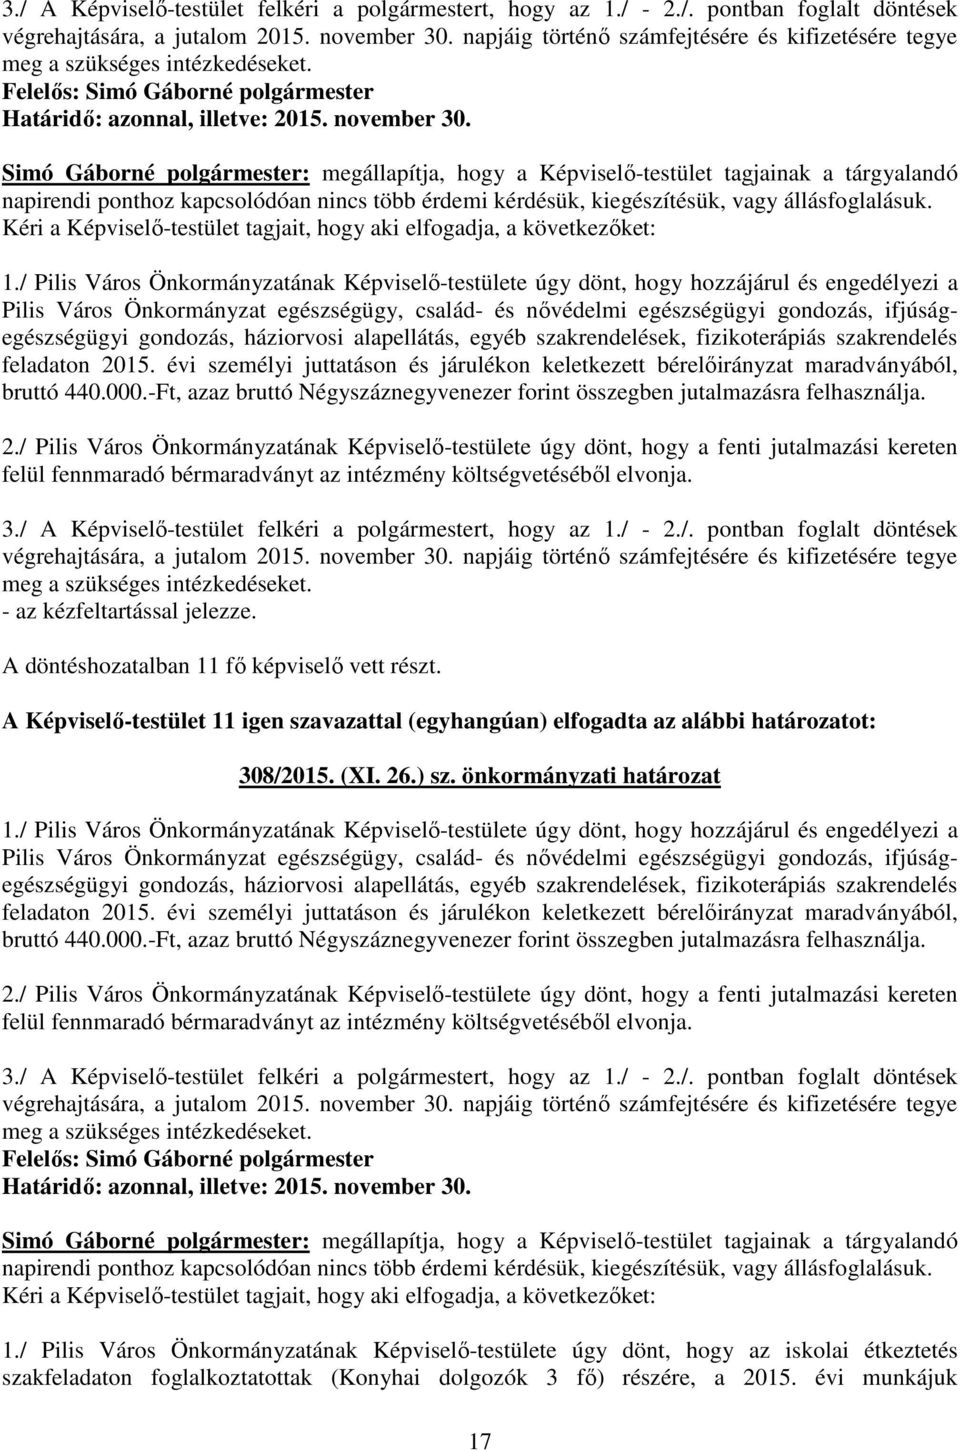 / Pilis Város Önkormányzatának Képviselő-testülete úgy dönt, hogy hozzájárul és engedélyezi a Pilis Város Önkormányzat egészségügy, család- és nővédelmi egészségügyi gondozás, ifjúságegészségügyi